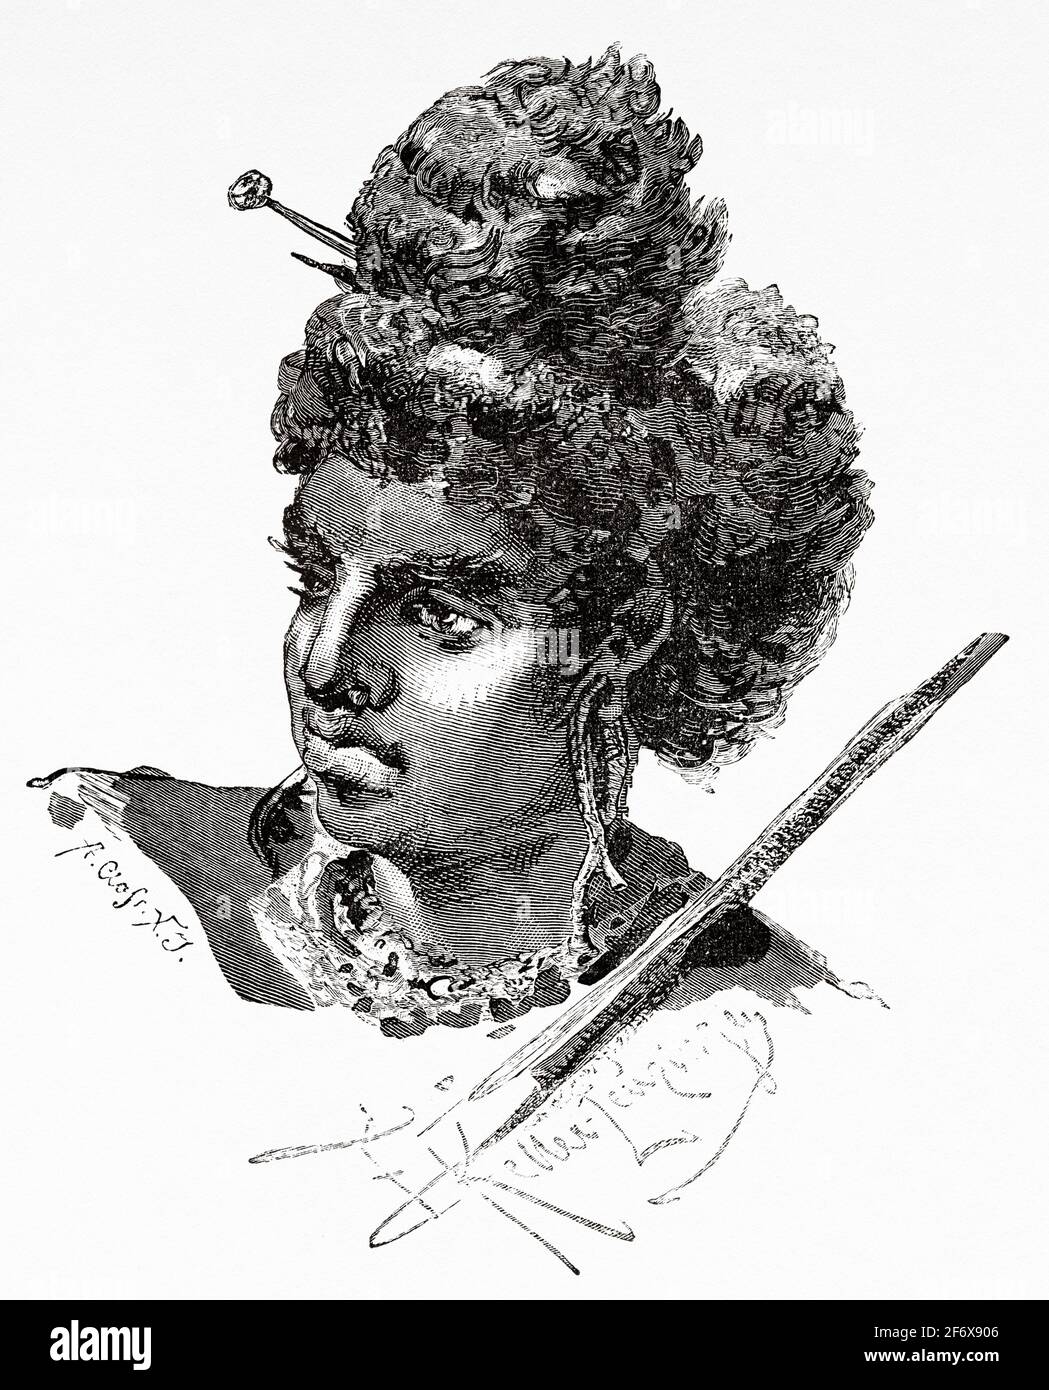 Aborigeno Papua donna dall'interno dell'isola di Papua Nuova Guinea. Antica illustrazione del 19 ° secolo inciso da El Mundo Ilustrado 1879 Foto Stock